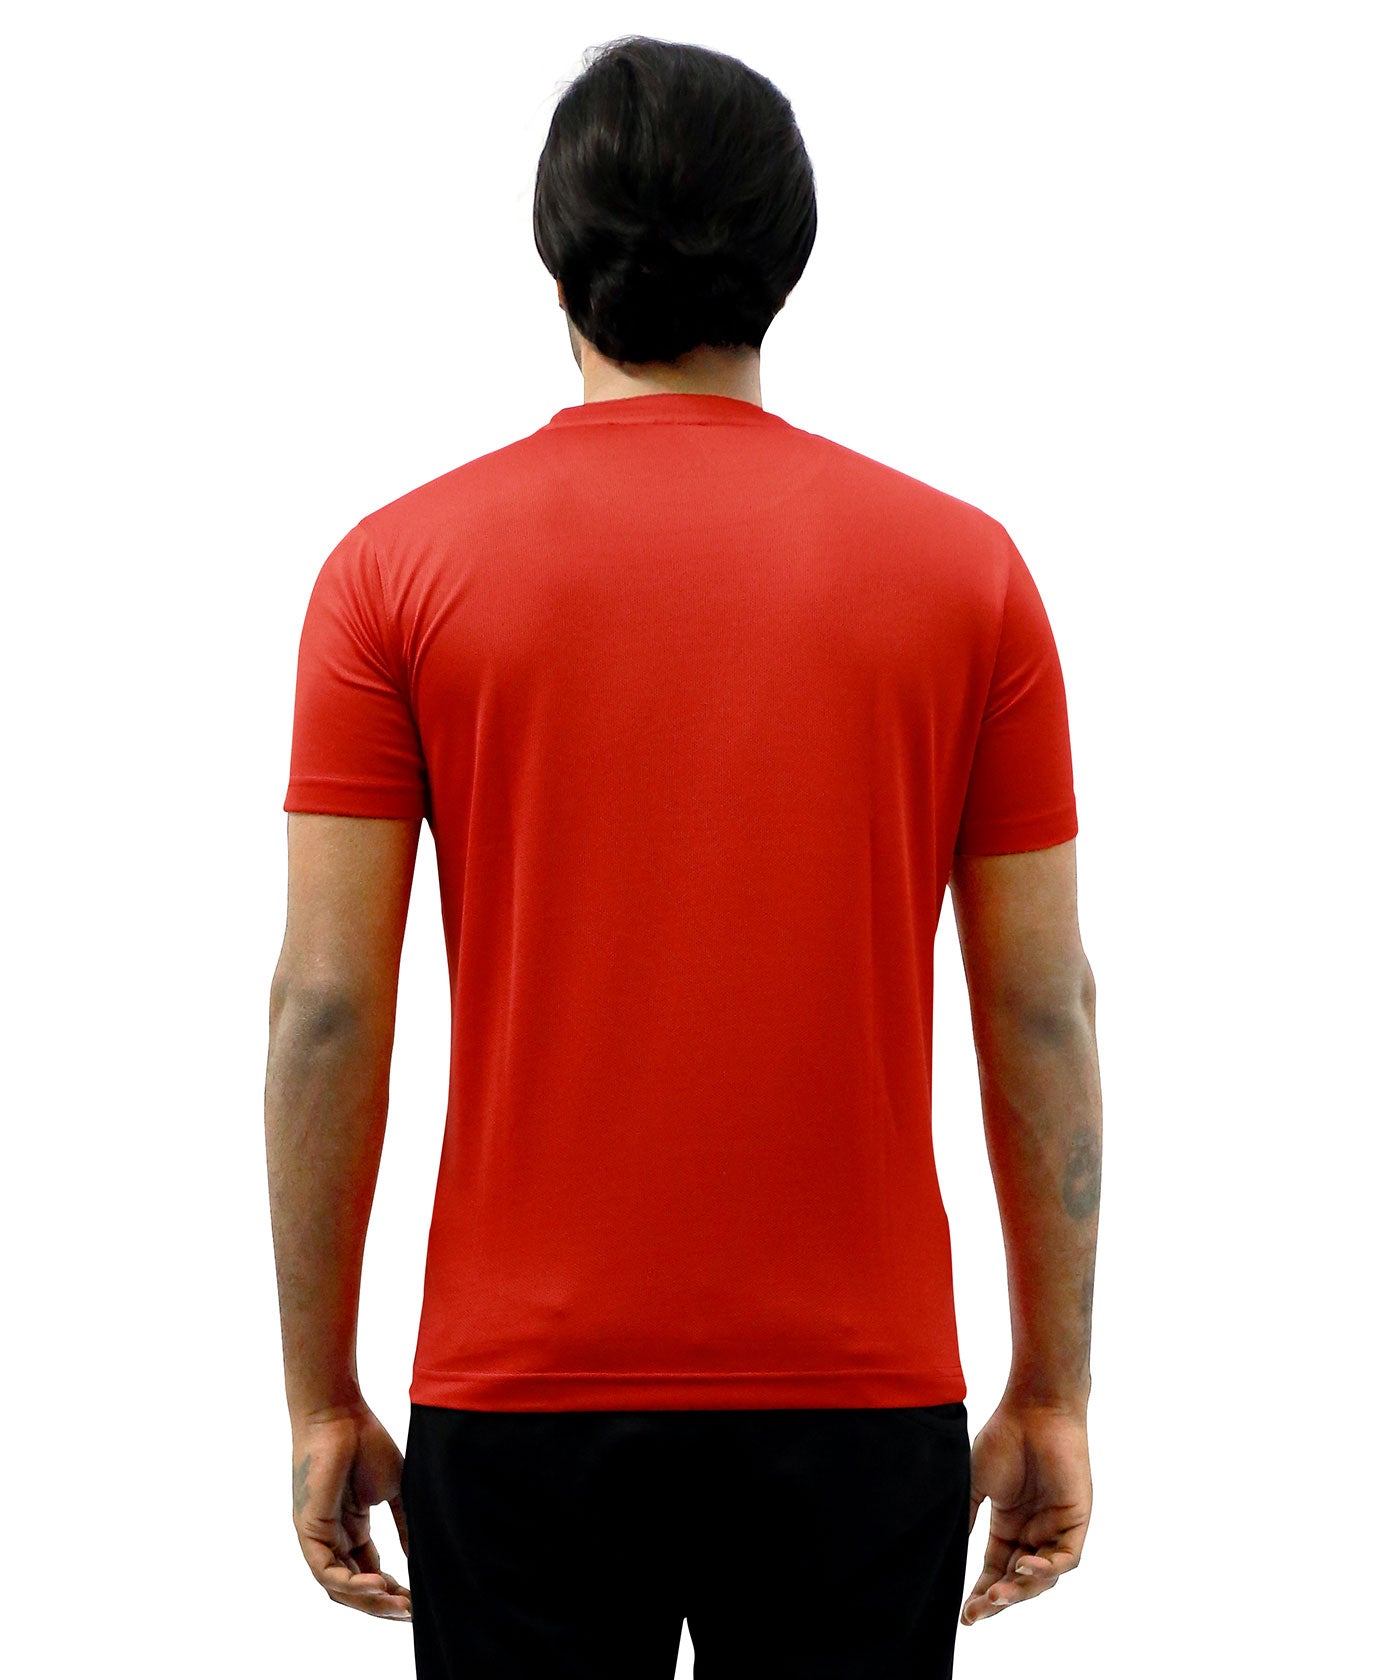 Tri Colour Ganesha - Dryfit T-Shirt for Men - Red